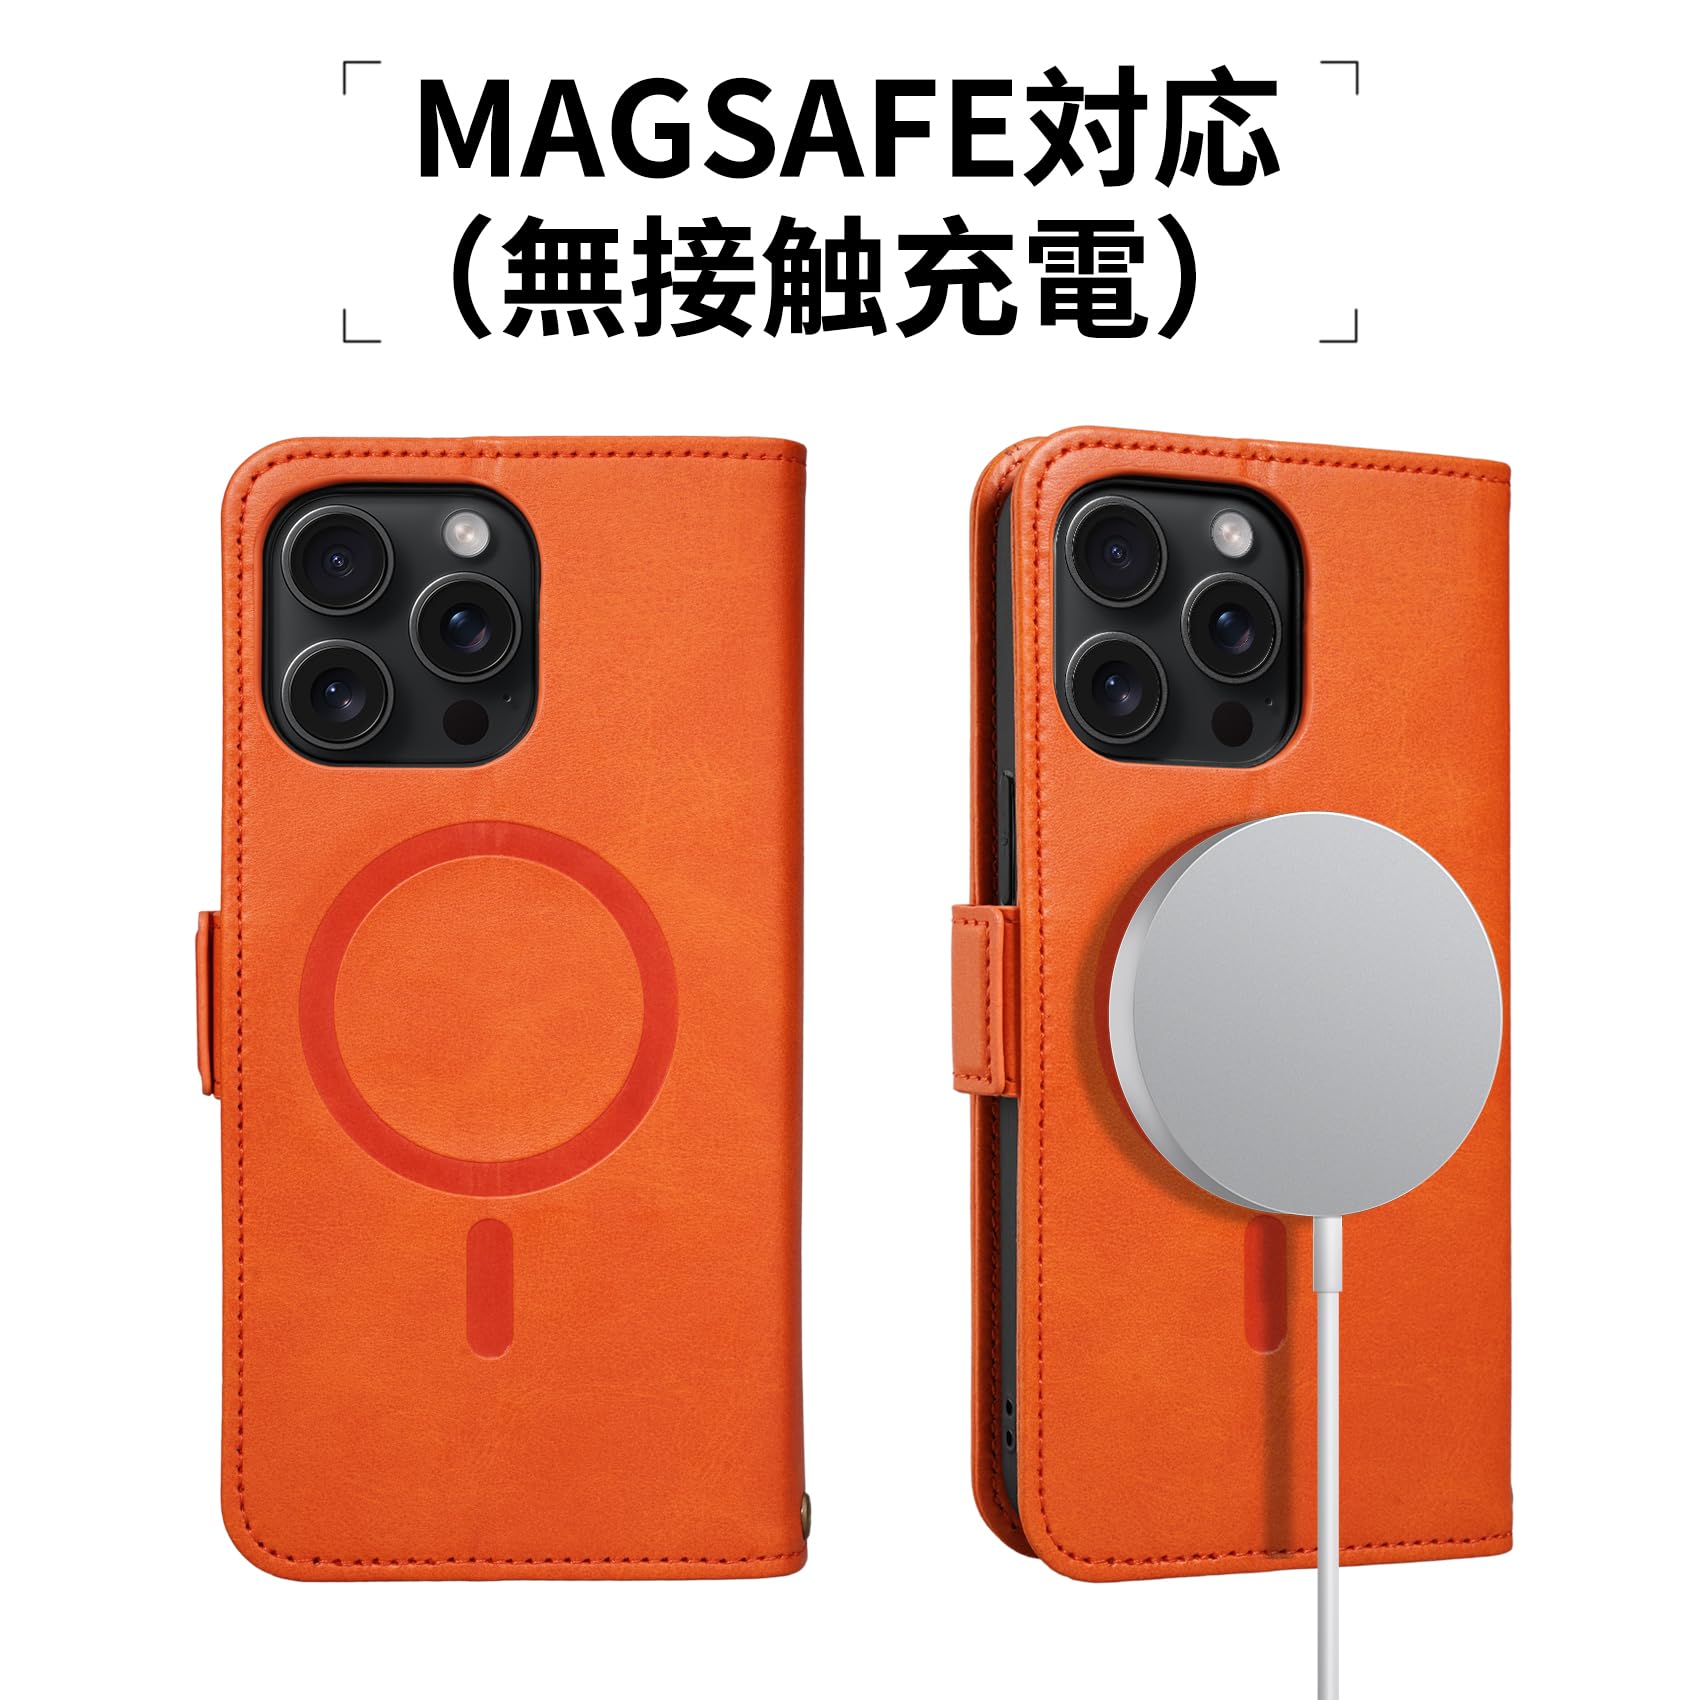 【Keallce】 いphone15pro max ケース 手帳型 MagSafe iPhone 15 pro max 手帳型 ケース アイフォン15プロマックス スマホカバー ストラップ スタンド機能 マグセーフ対応 ワイヤレス充電 カード収納 贈り物 全面保護 MagSafe対応 iPhone 15 pro max 6.7inch オレンジ